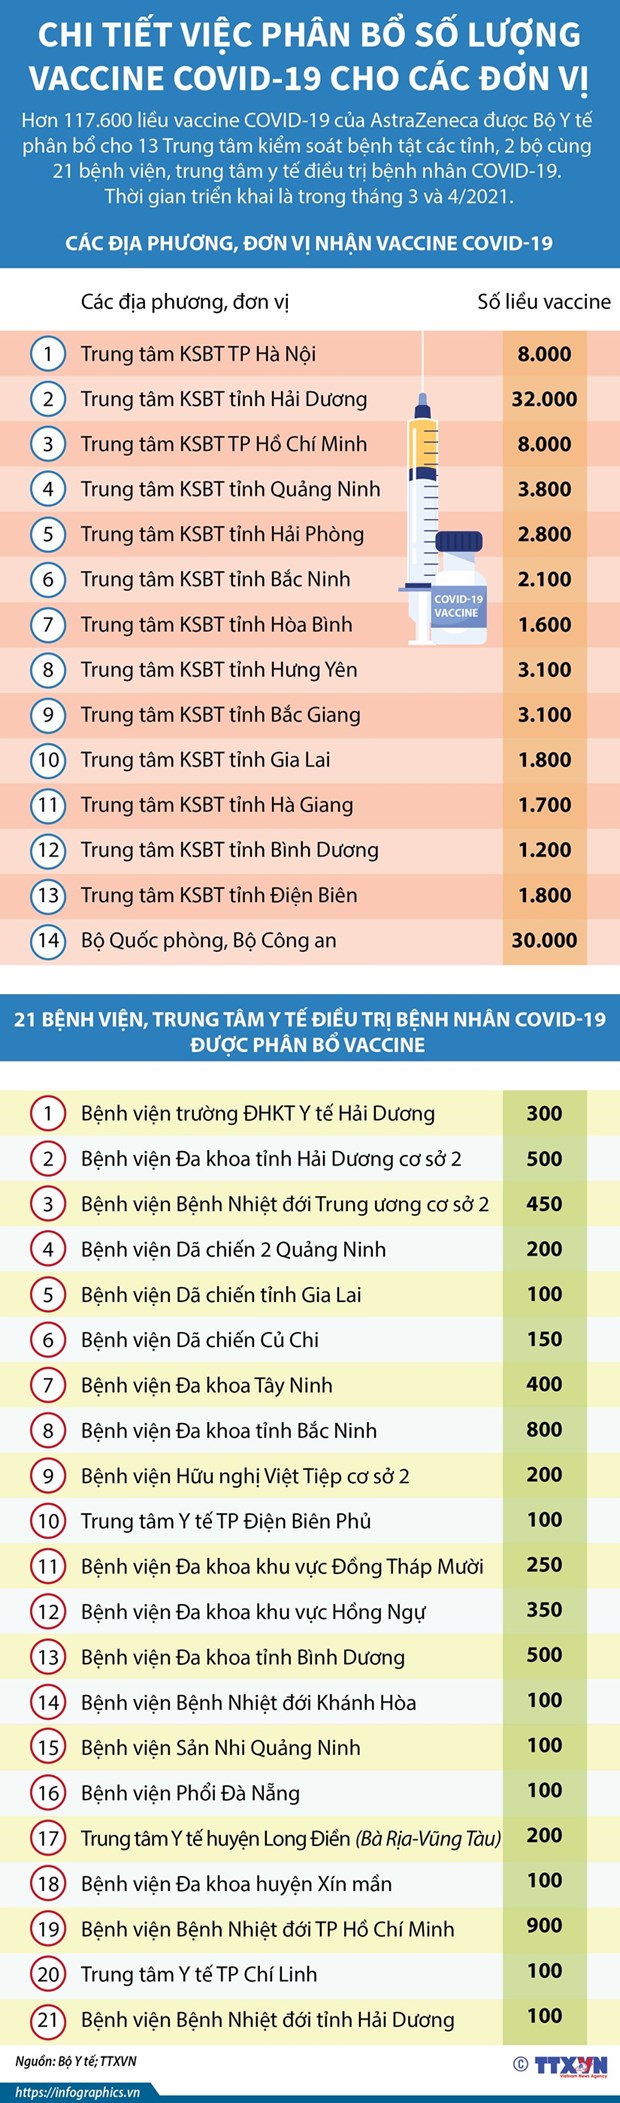 Hôm nay, Việt Nam bắt đầu tiêm vaccine phòng Covid-19 tại nhiều nơi - Ảnh 2.